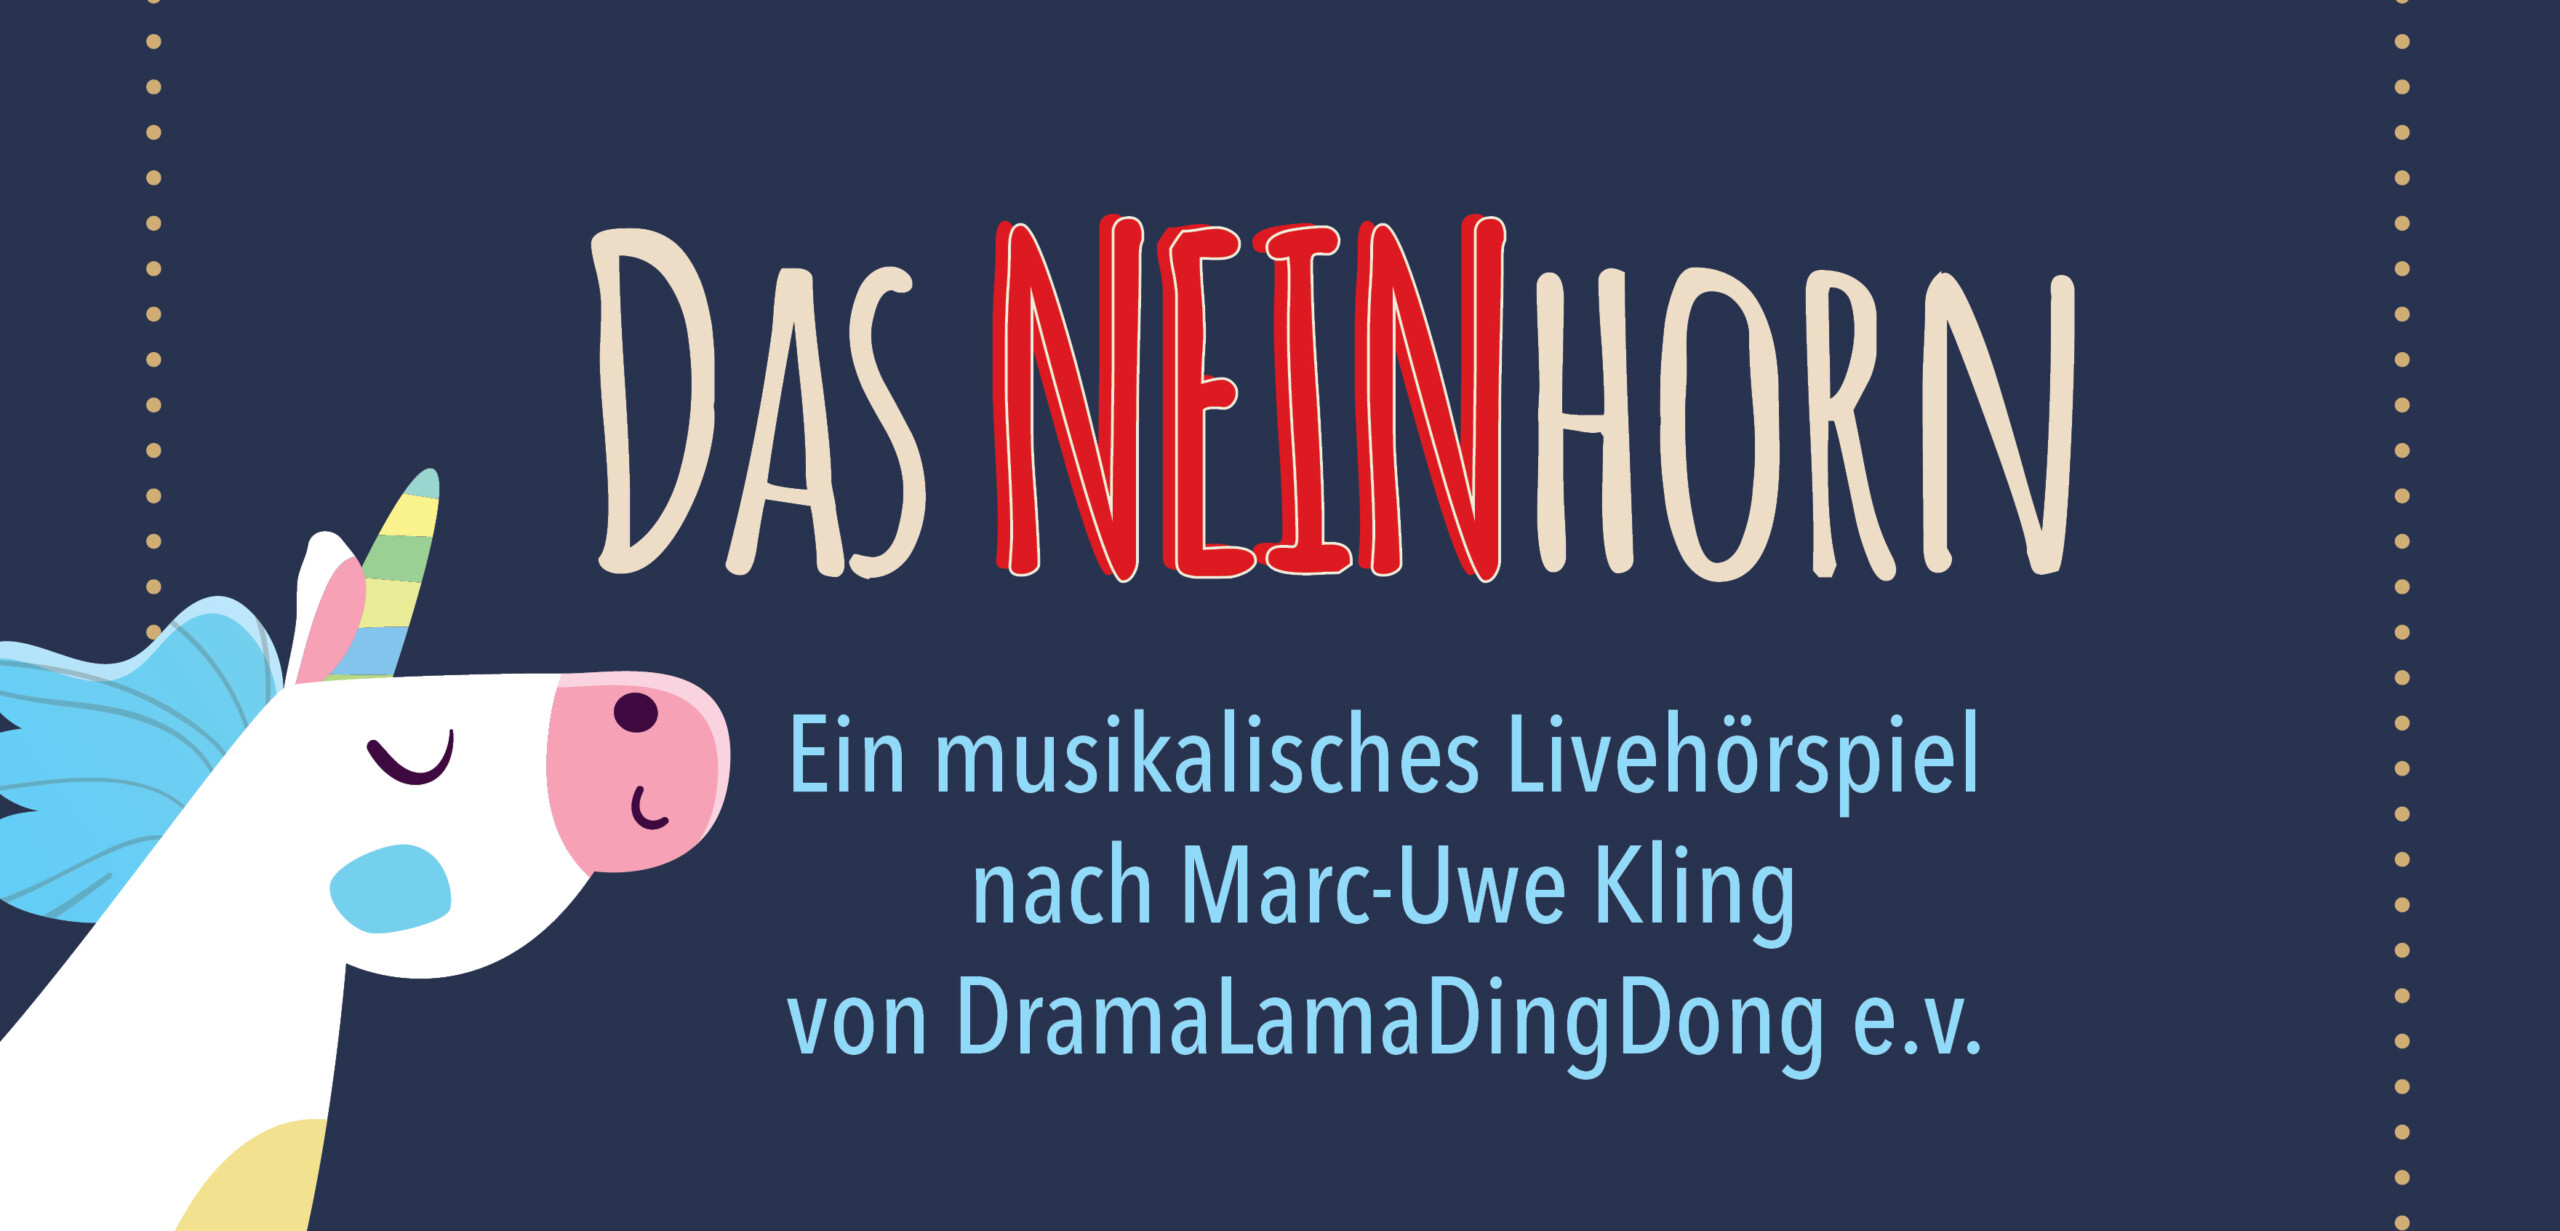 Das Neinhorn - ein musikalisches Livehörspiel von  DramaLamaDingDong e.v.